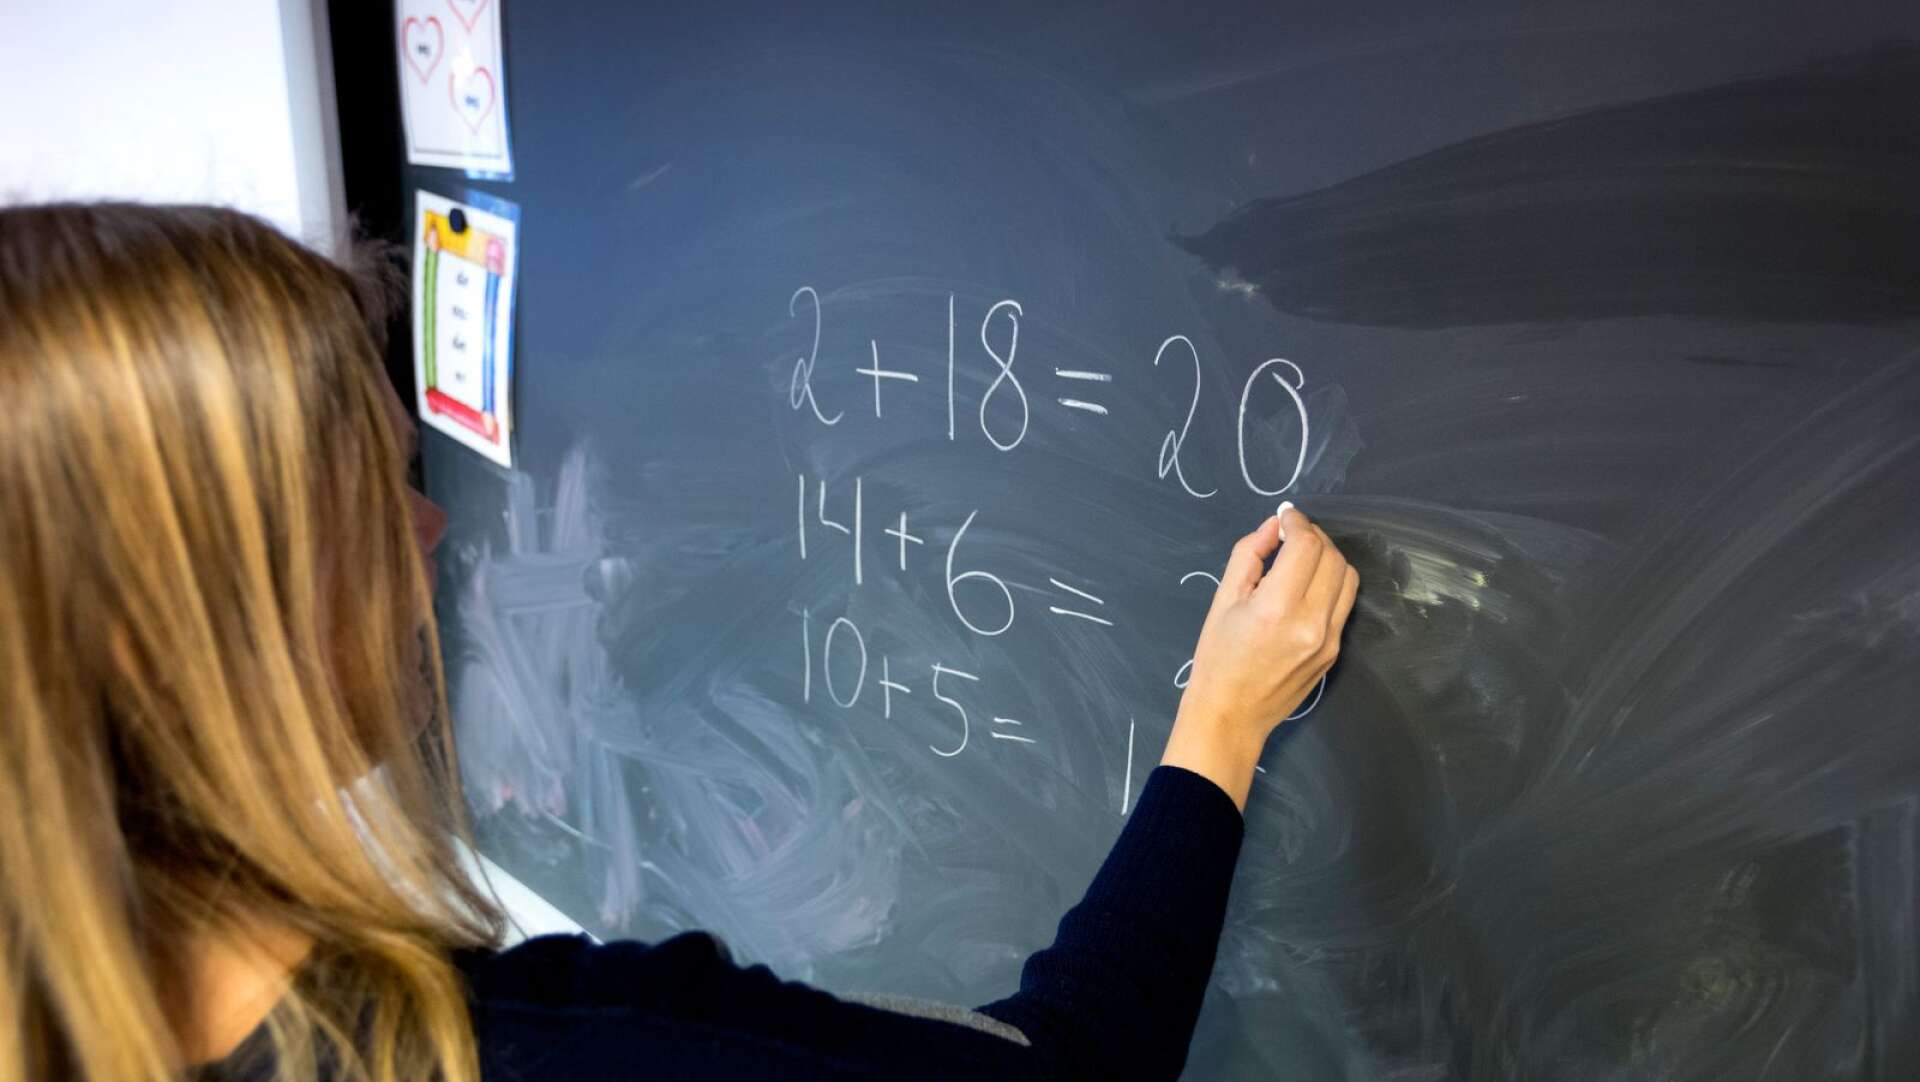 Antalet lärare kommer att minska i Bengtsfors kommun under 2019. Detta till följd av att sparkraven ökar inom skolan.